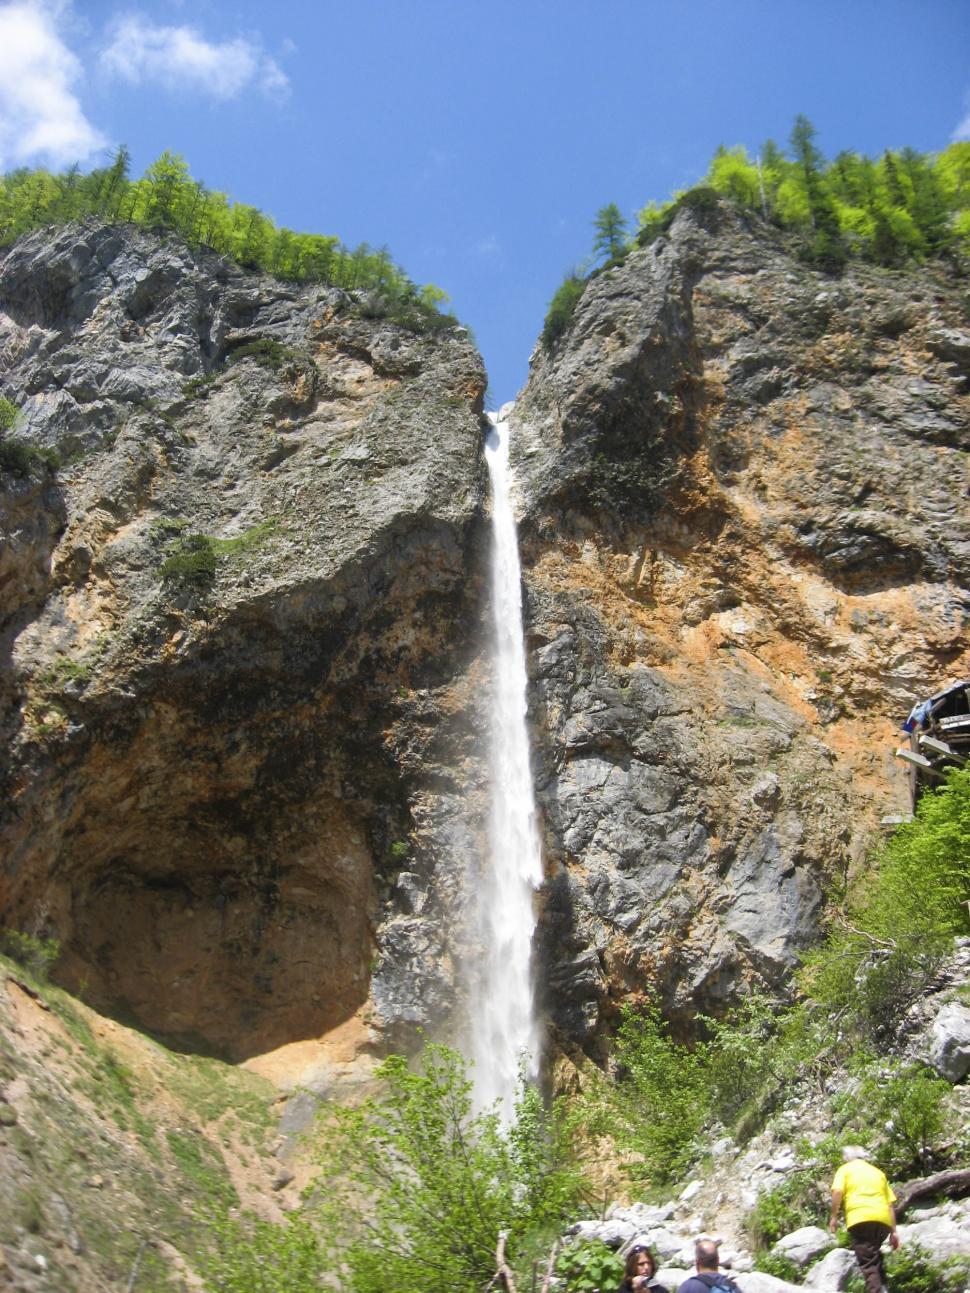 Free Image of Waterfall through rocks 